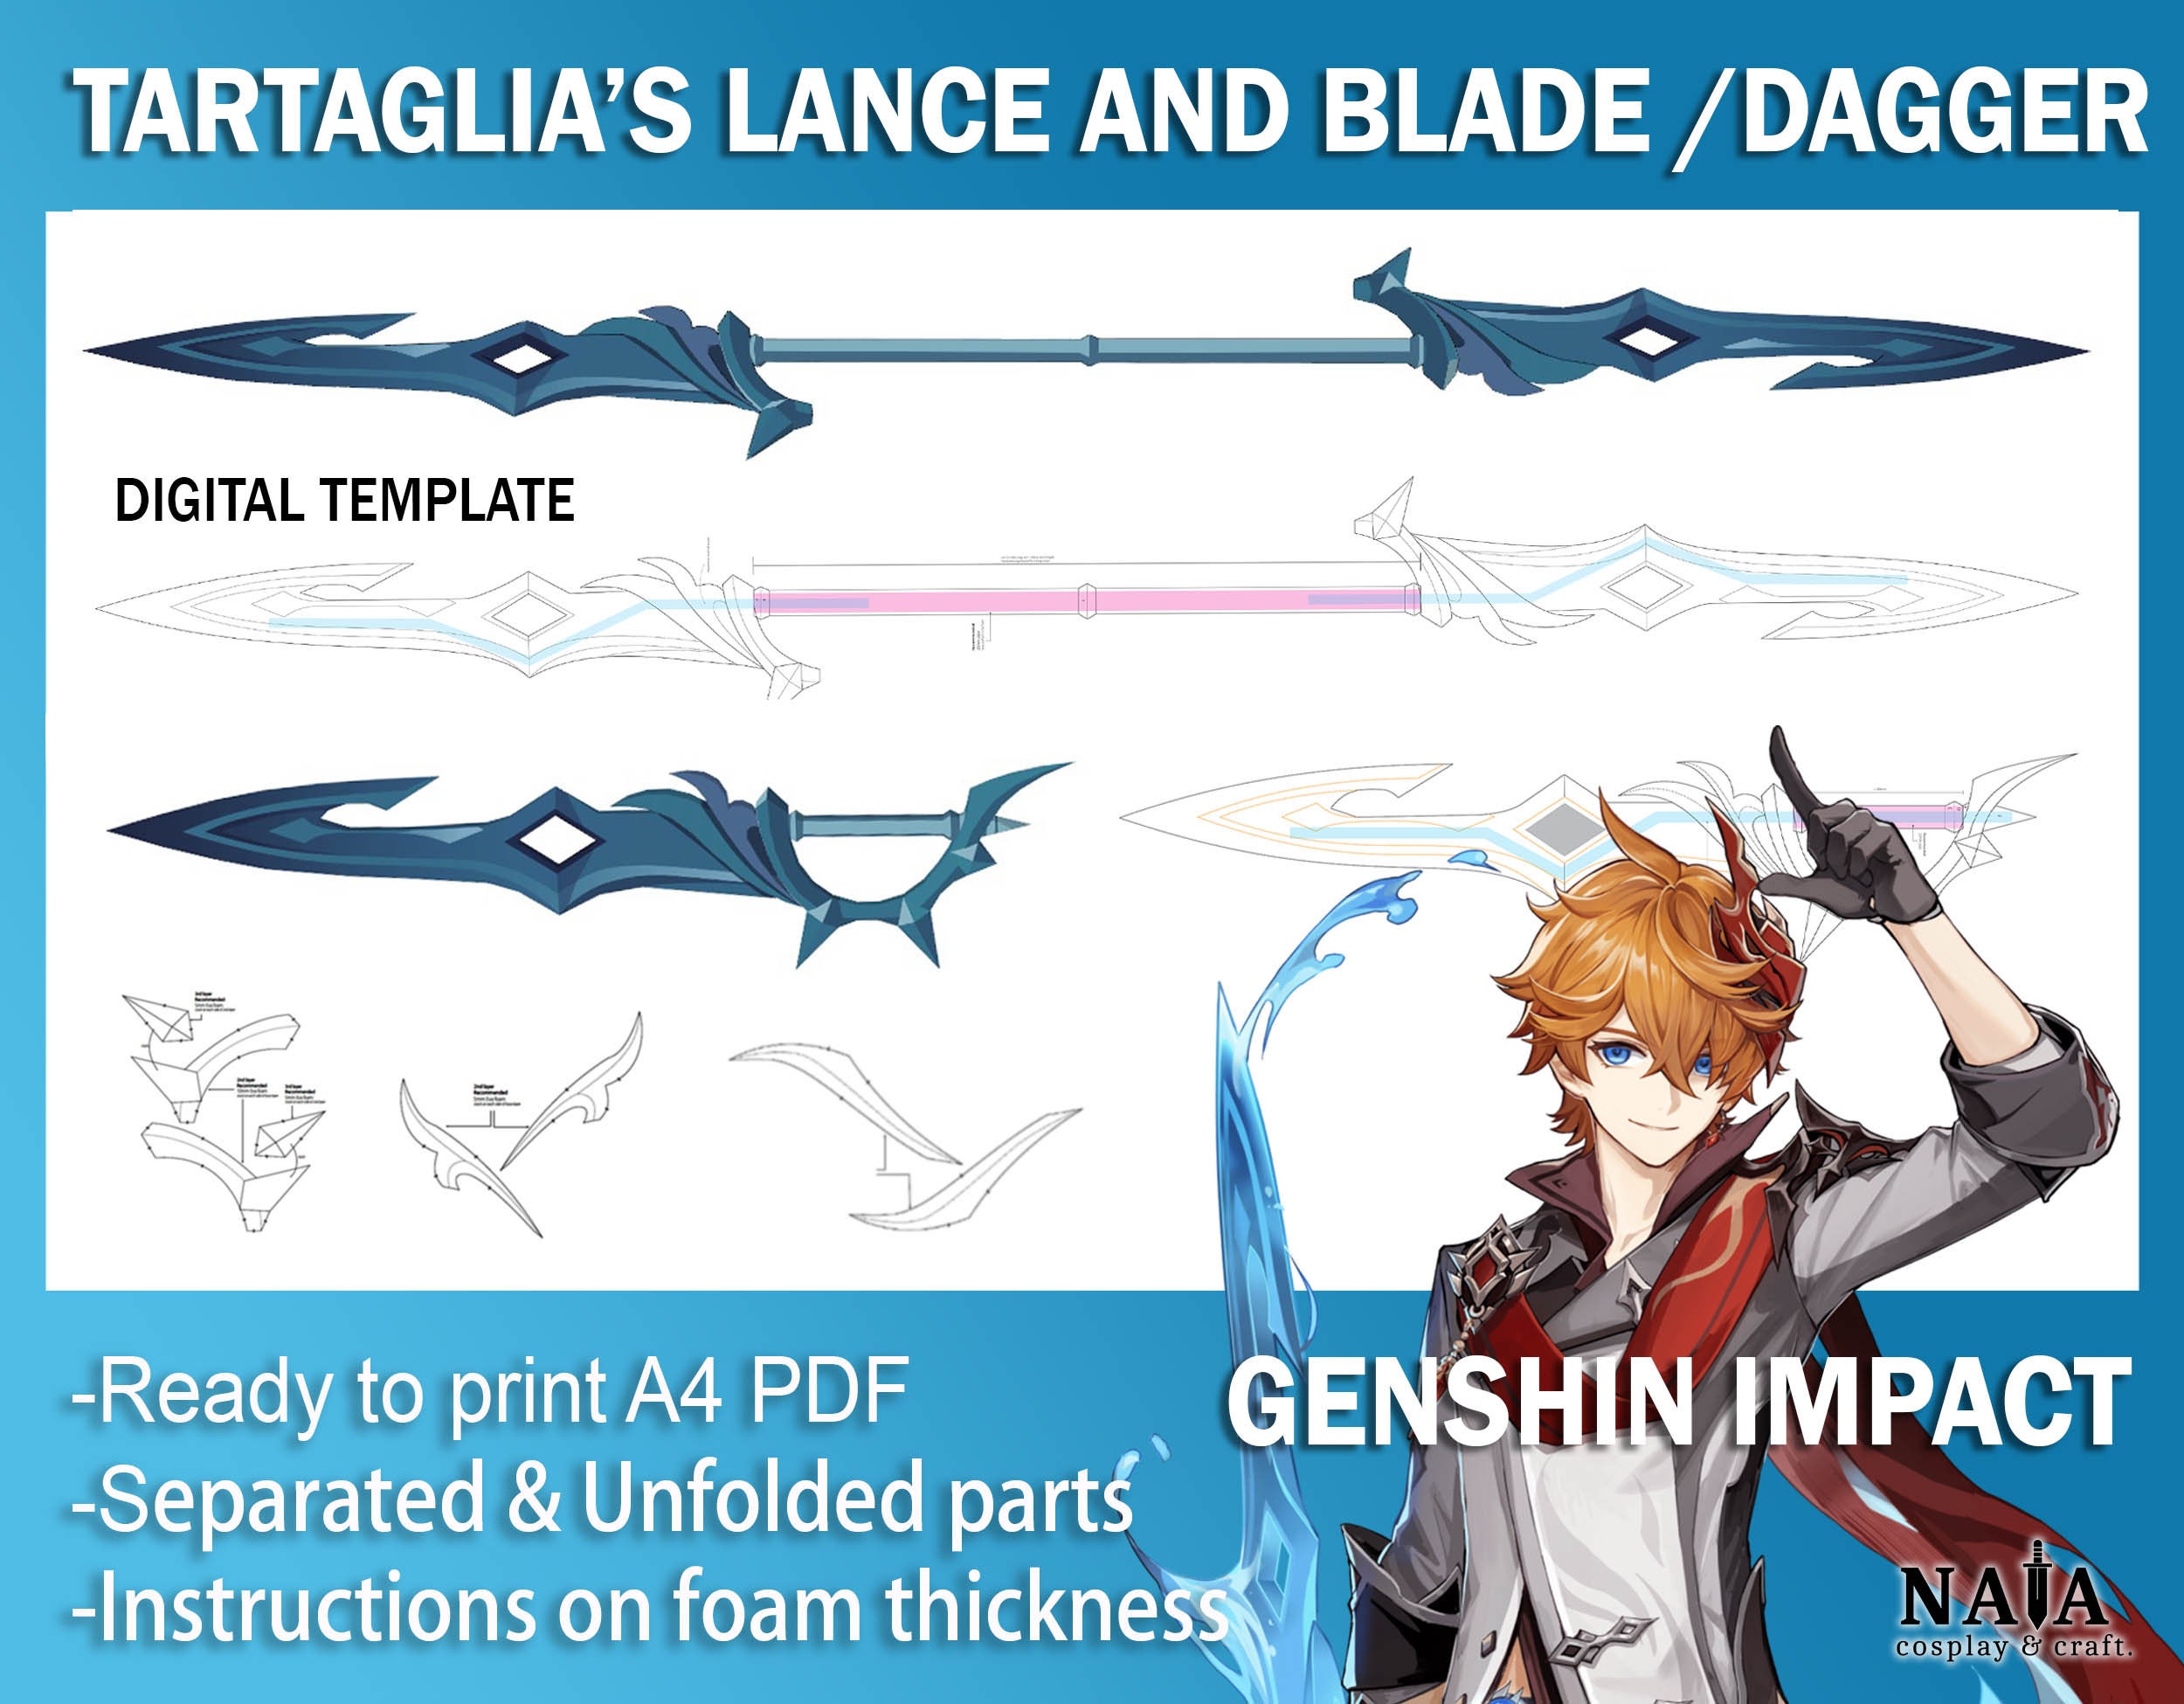 V1.4 Guide] Childe Tartaglia Build Guide Genshin Impact